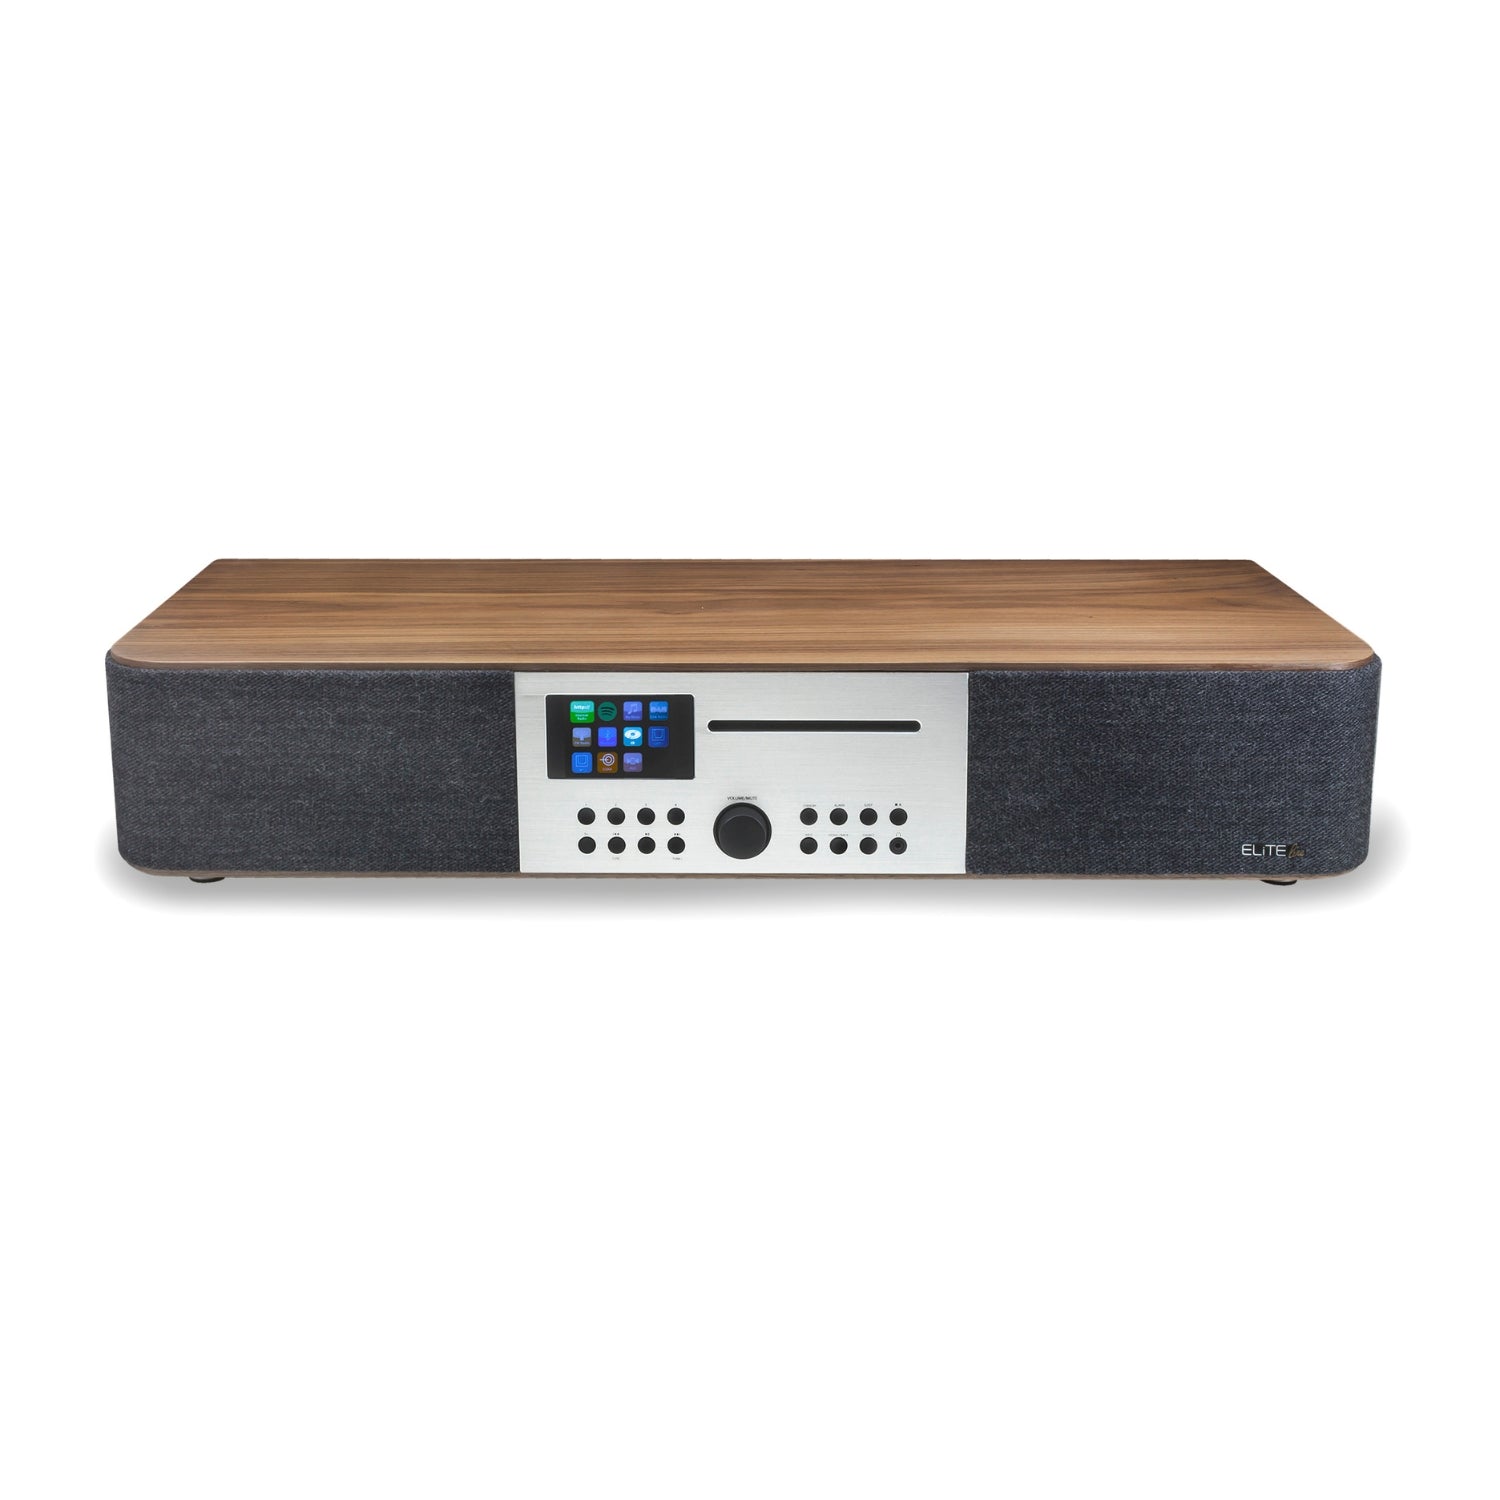 Soundmaster Eliteline ICD2018 Stereoanlage HiFi Anlage Kompaktanlage Internetradio DAB+ UKW-Radio Netzwerk-Player CD Multi-Room und App-Steuerung